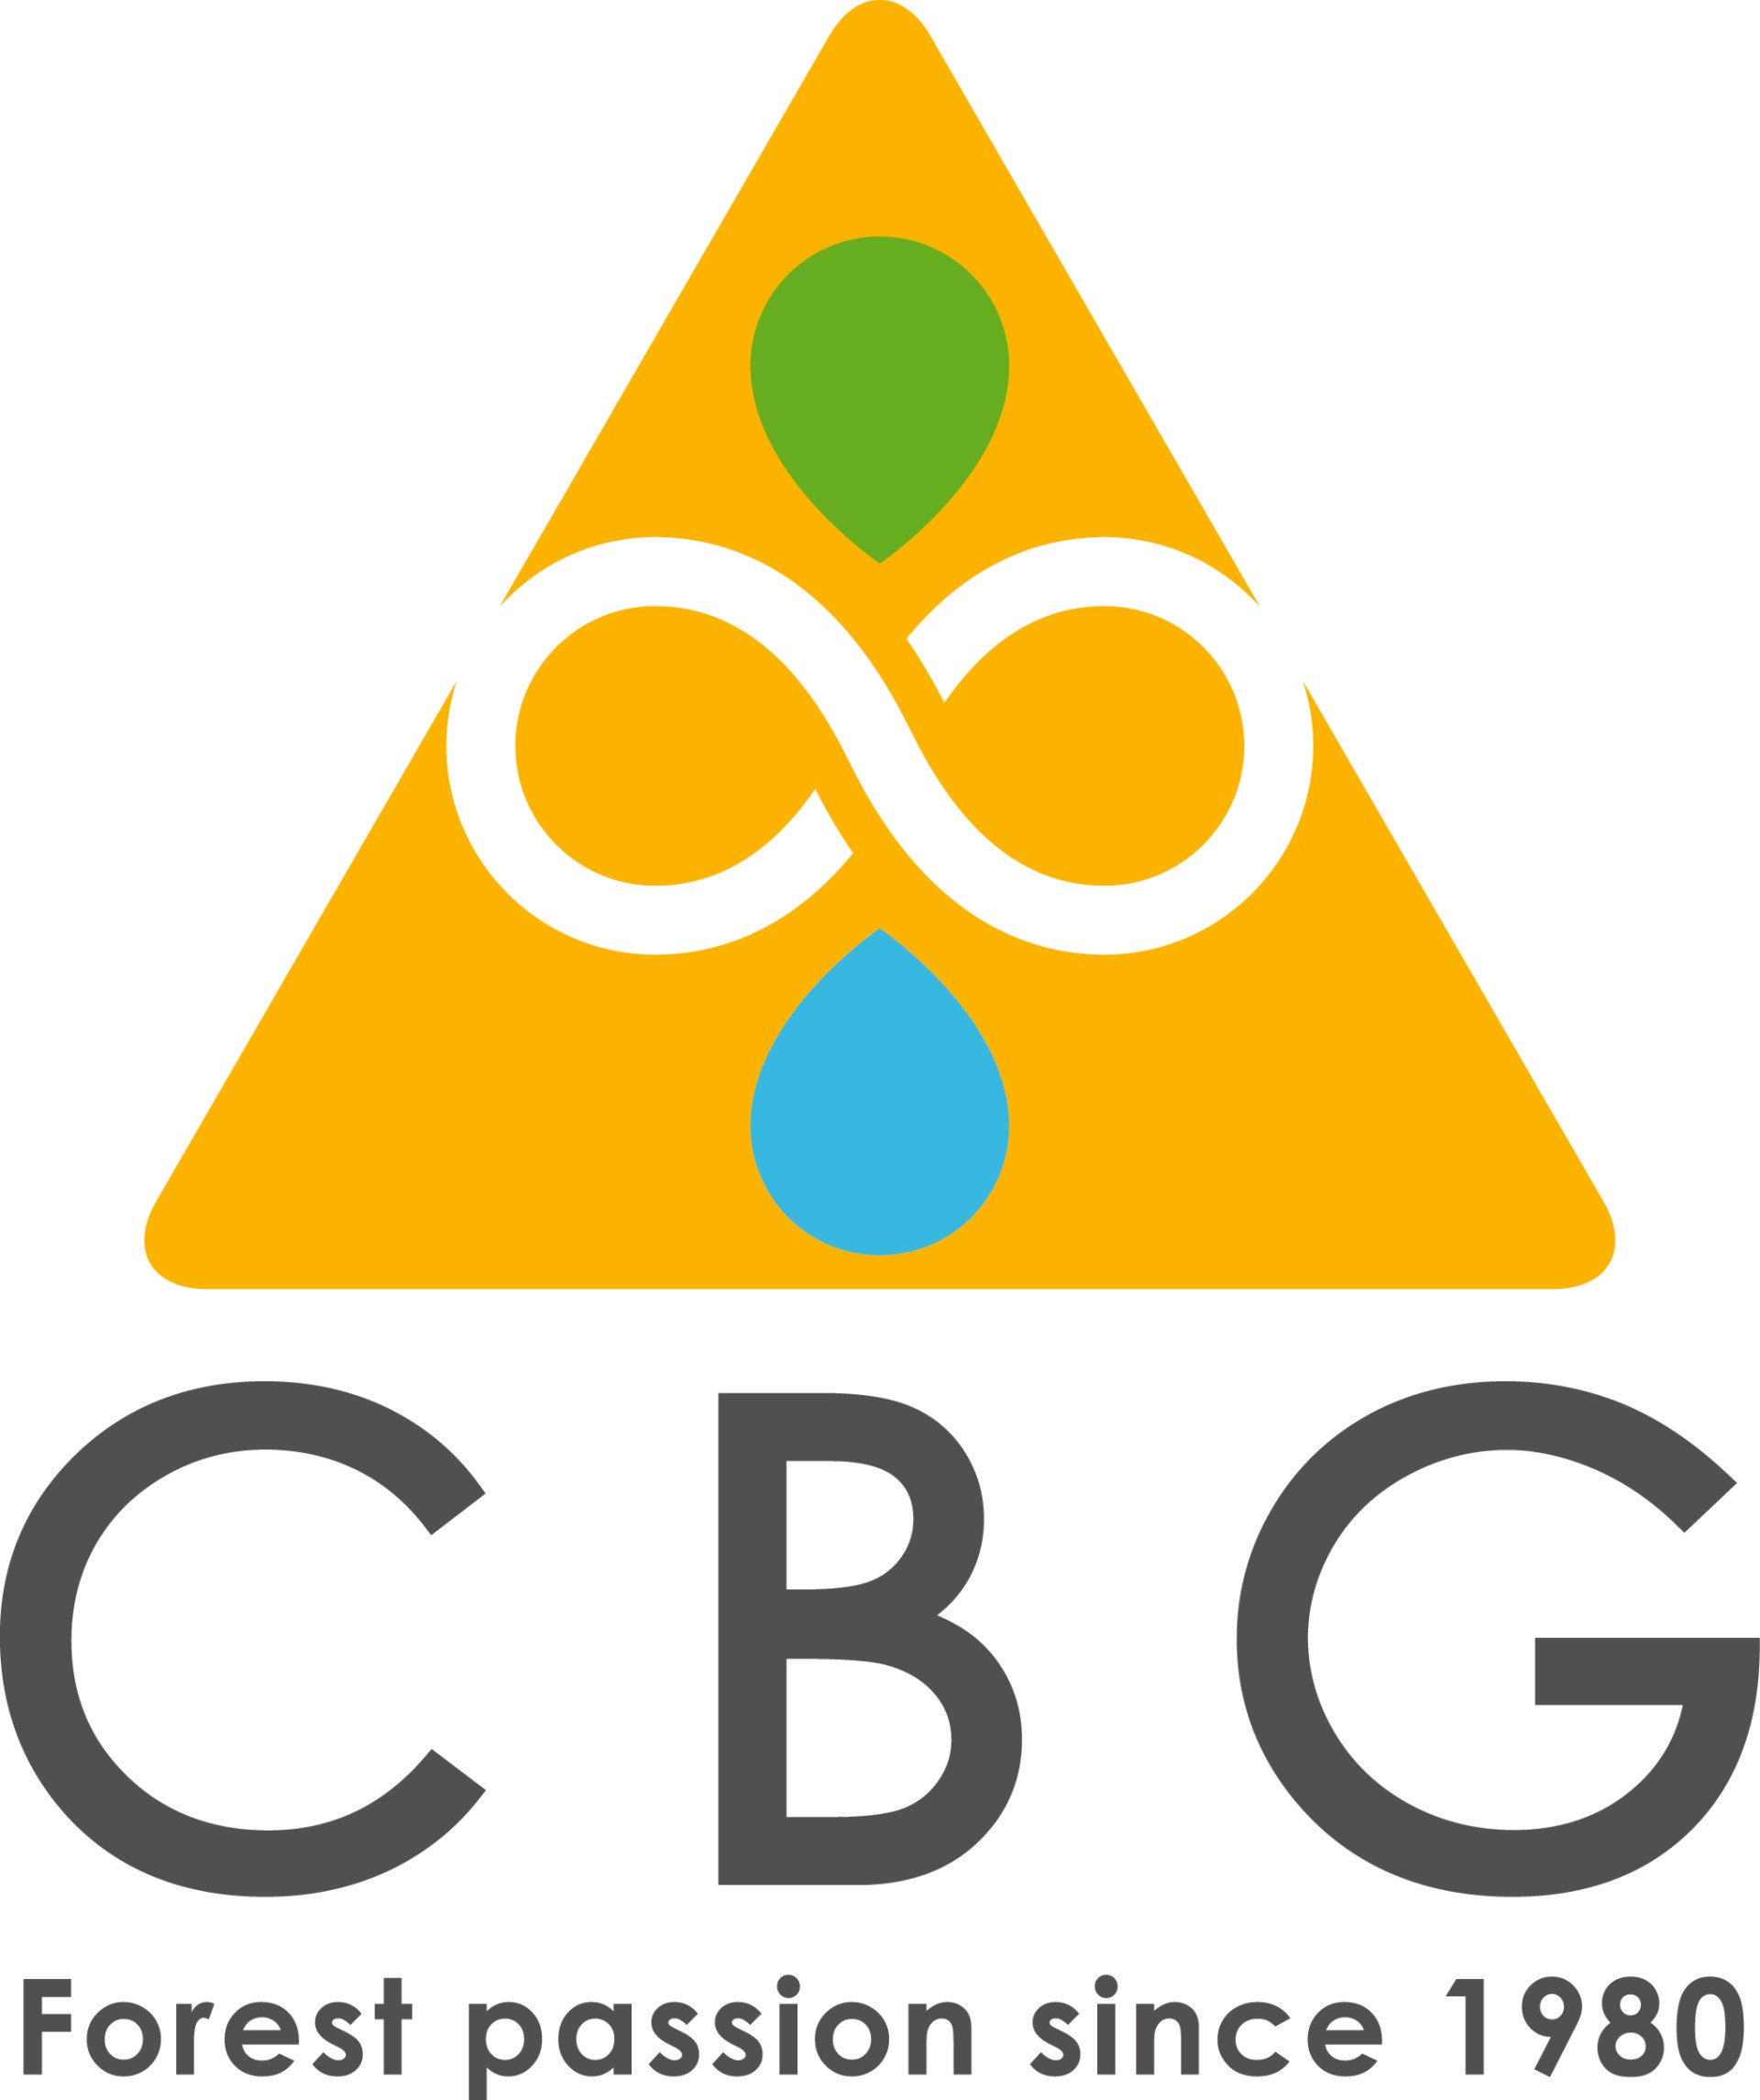 Logo CBG